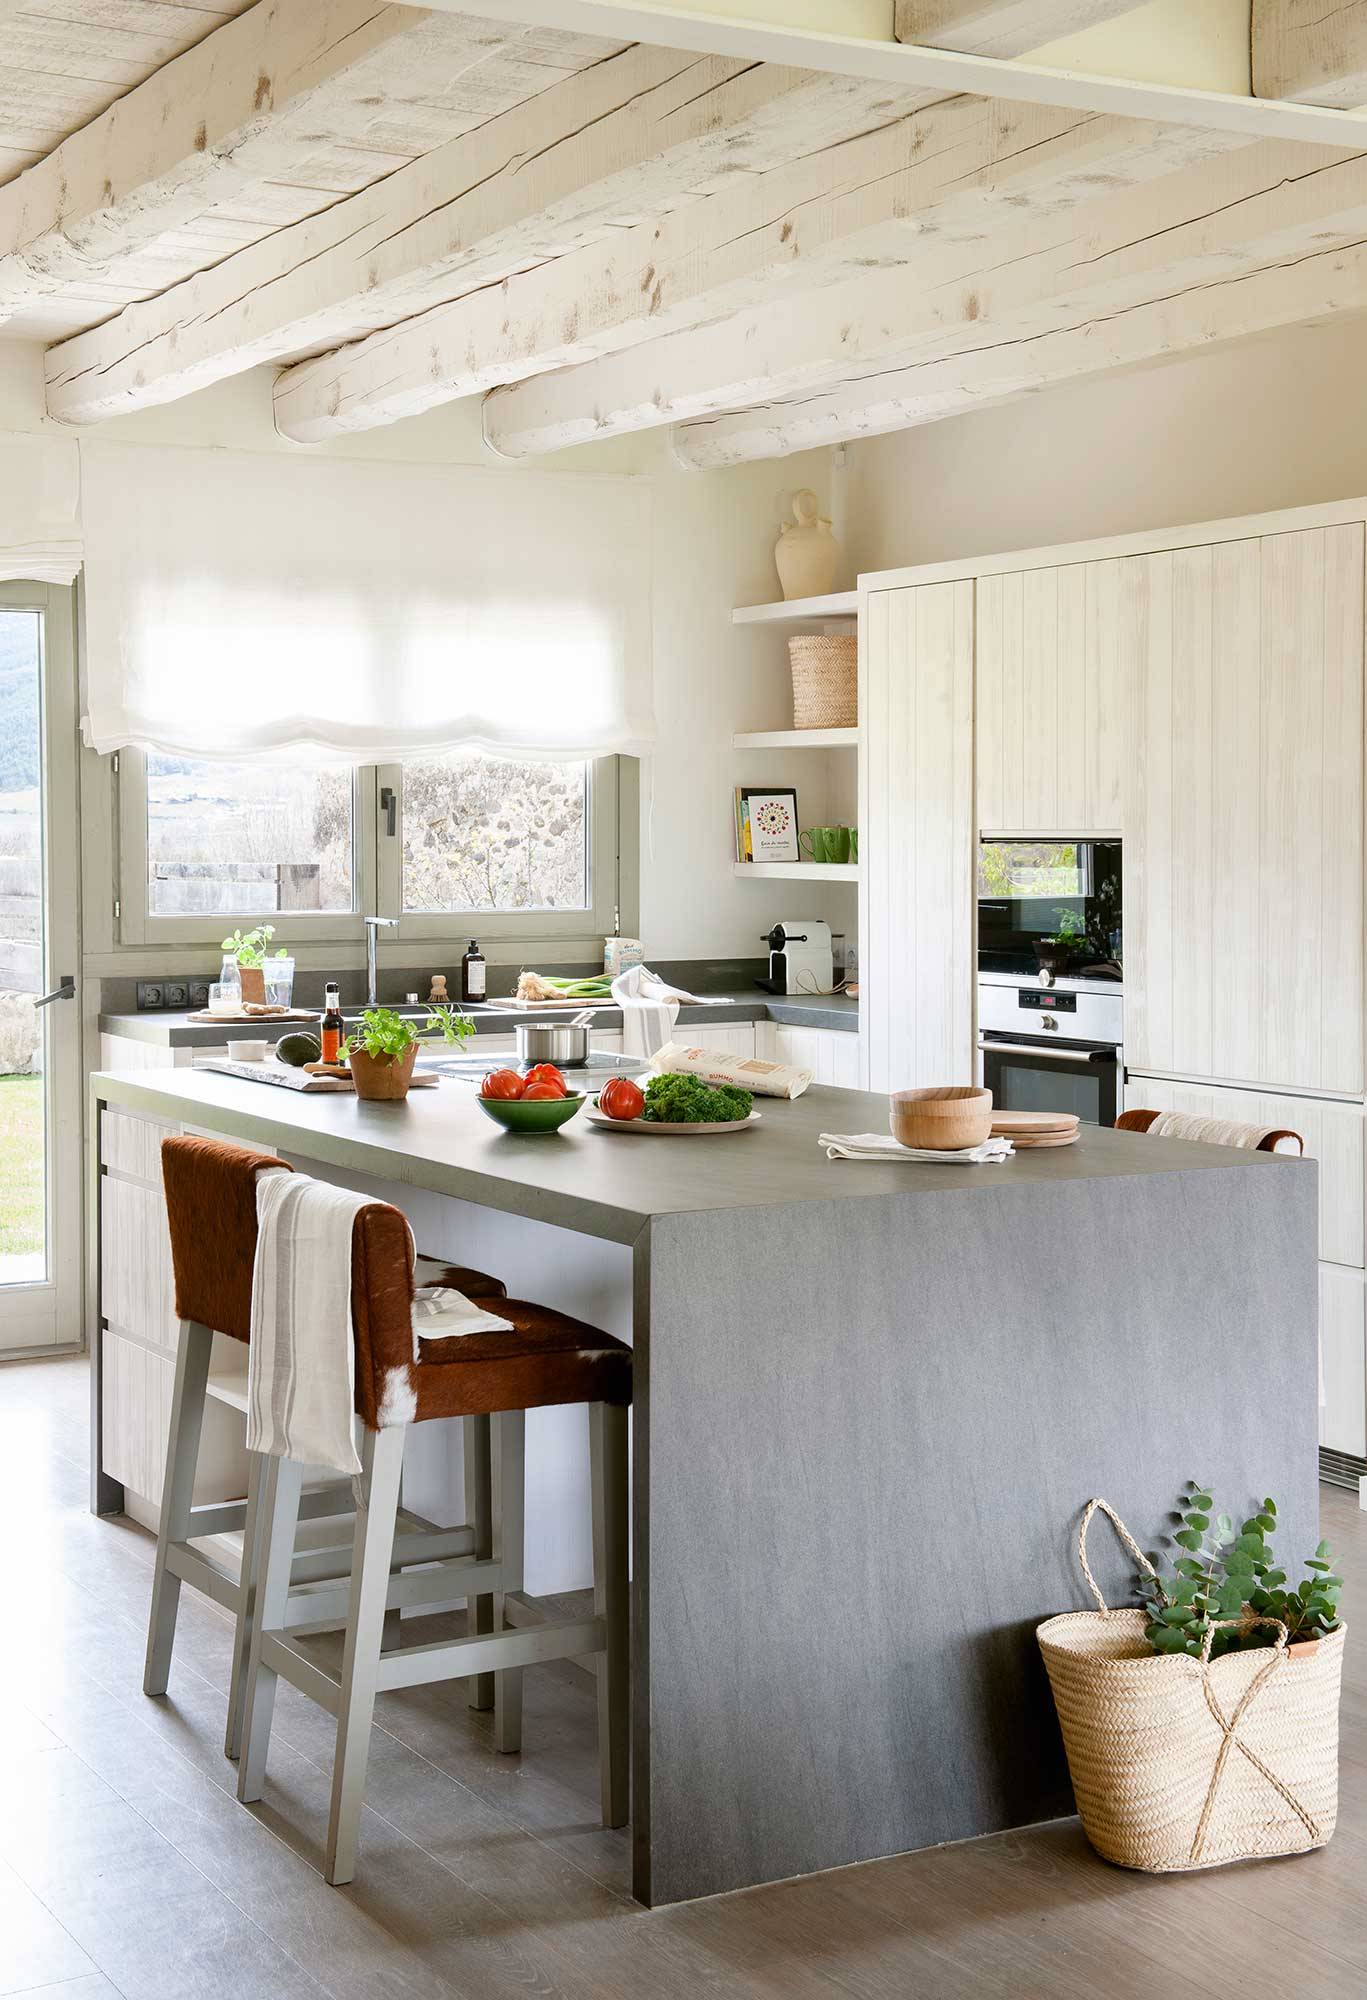 Cocina rústica moderna con muebles de madera blanca e isla de color gris. 